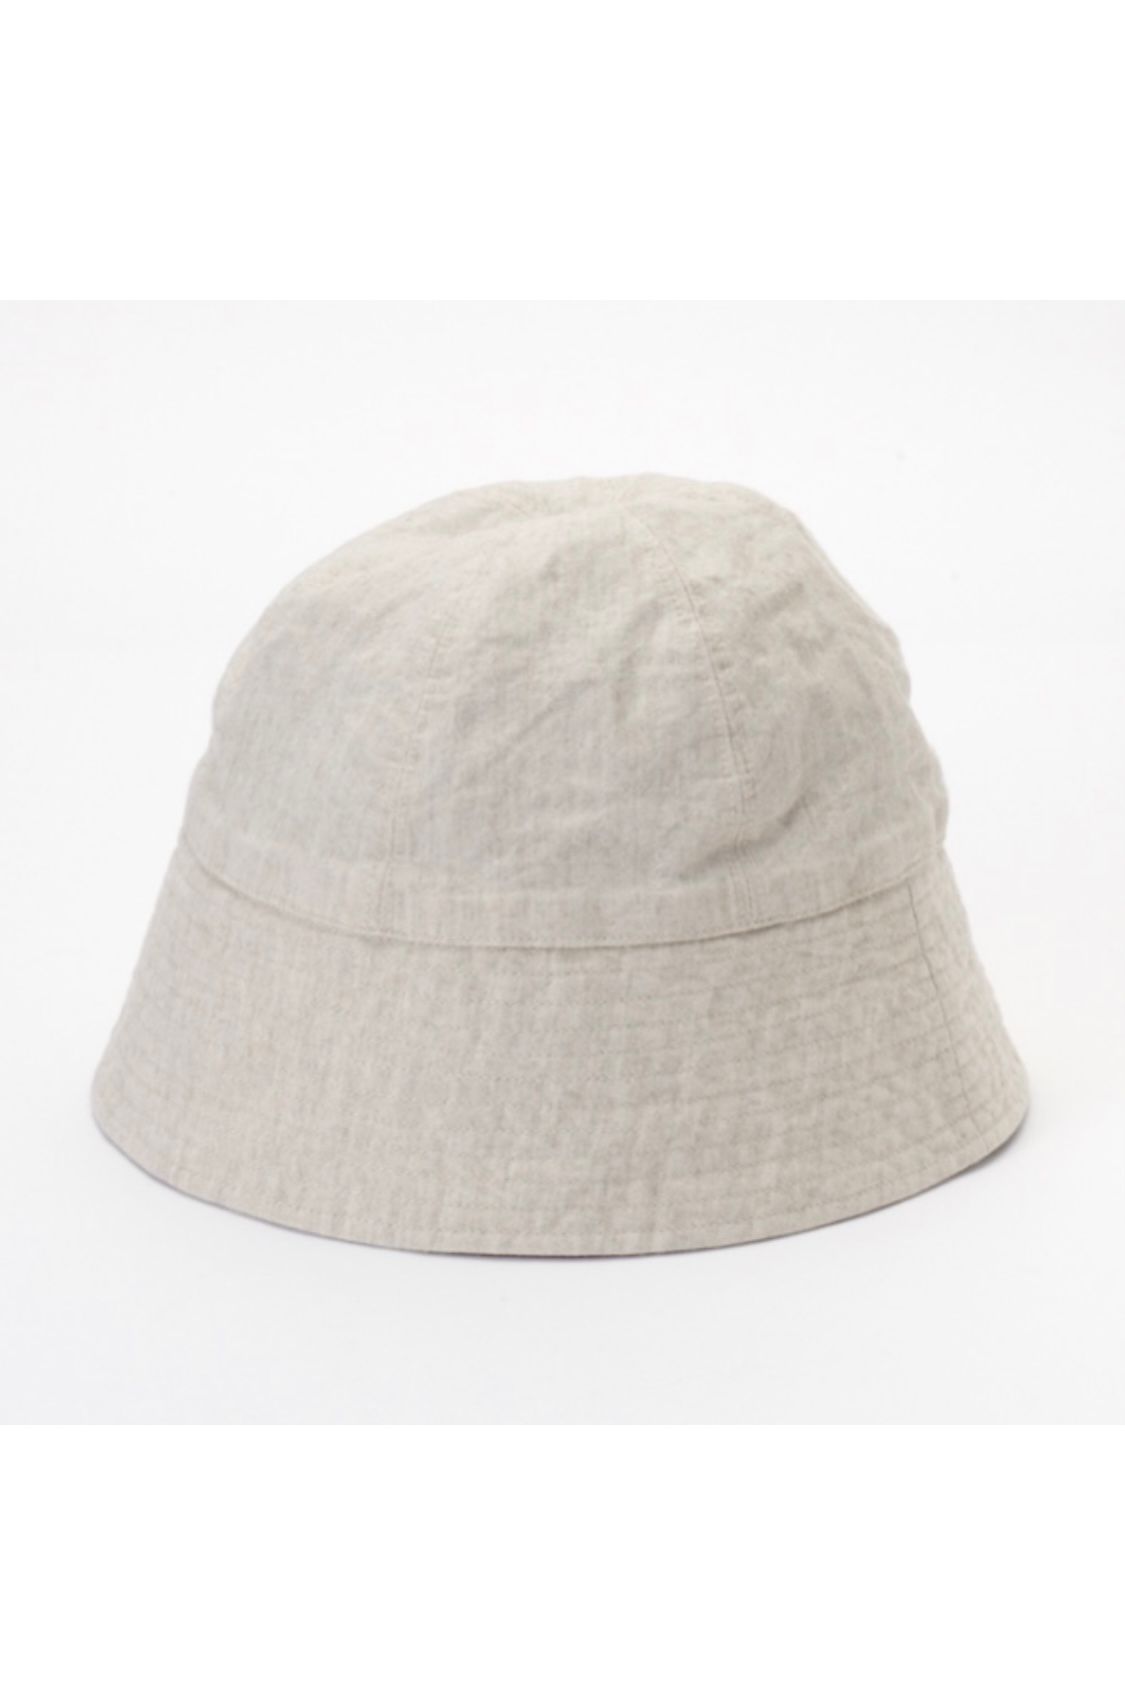 KIJIMA TAKAYUKI - paper linen sailor hat -navy- 23ss | asterisk